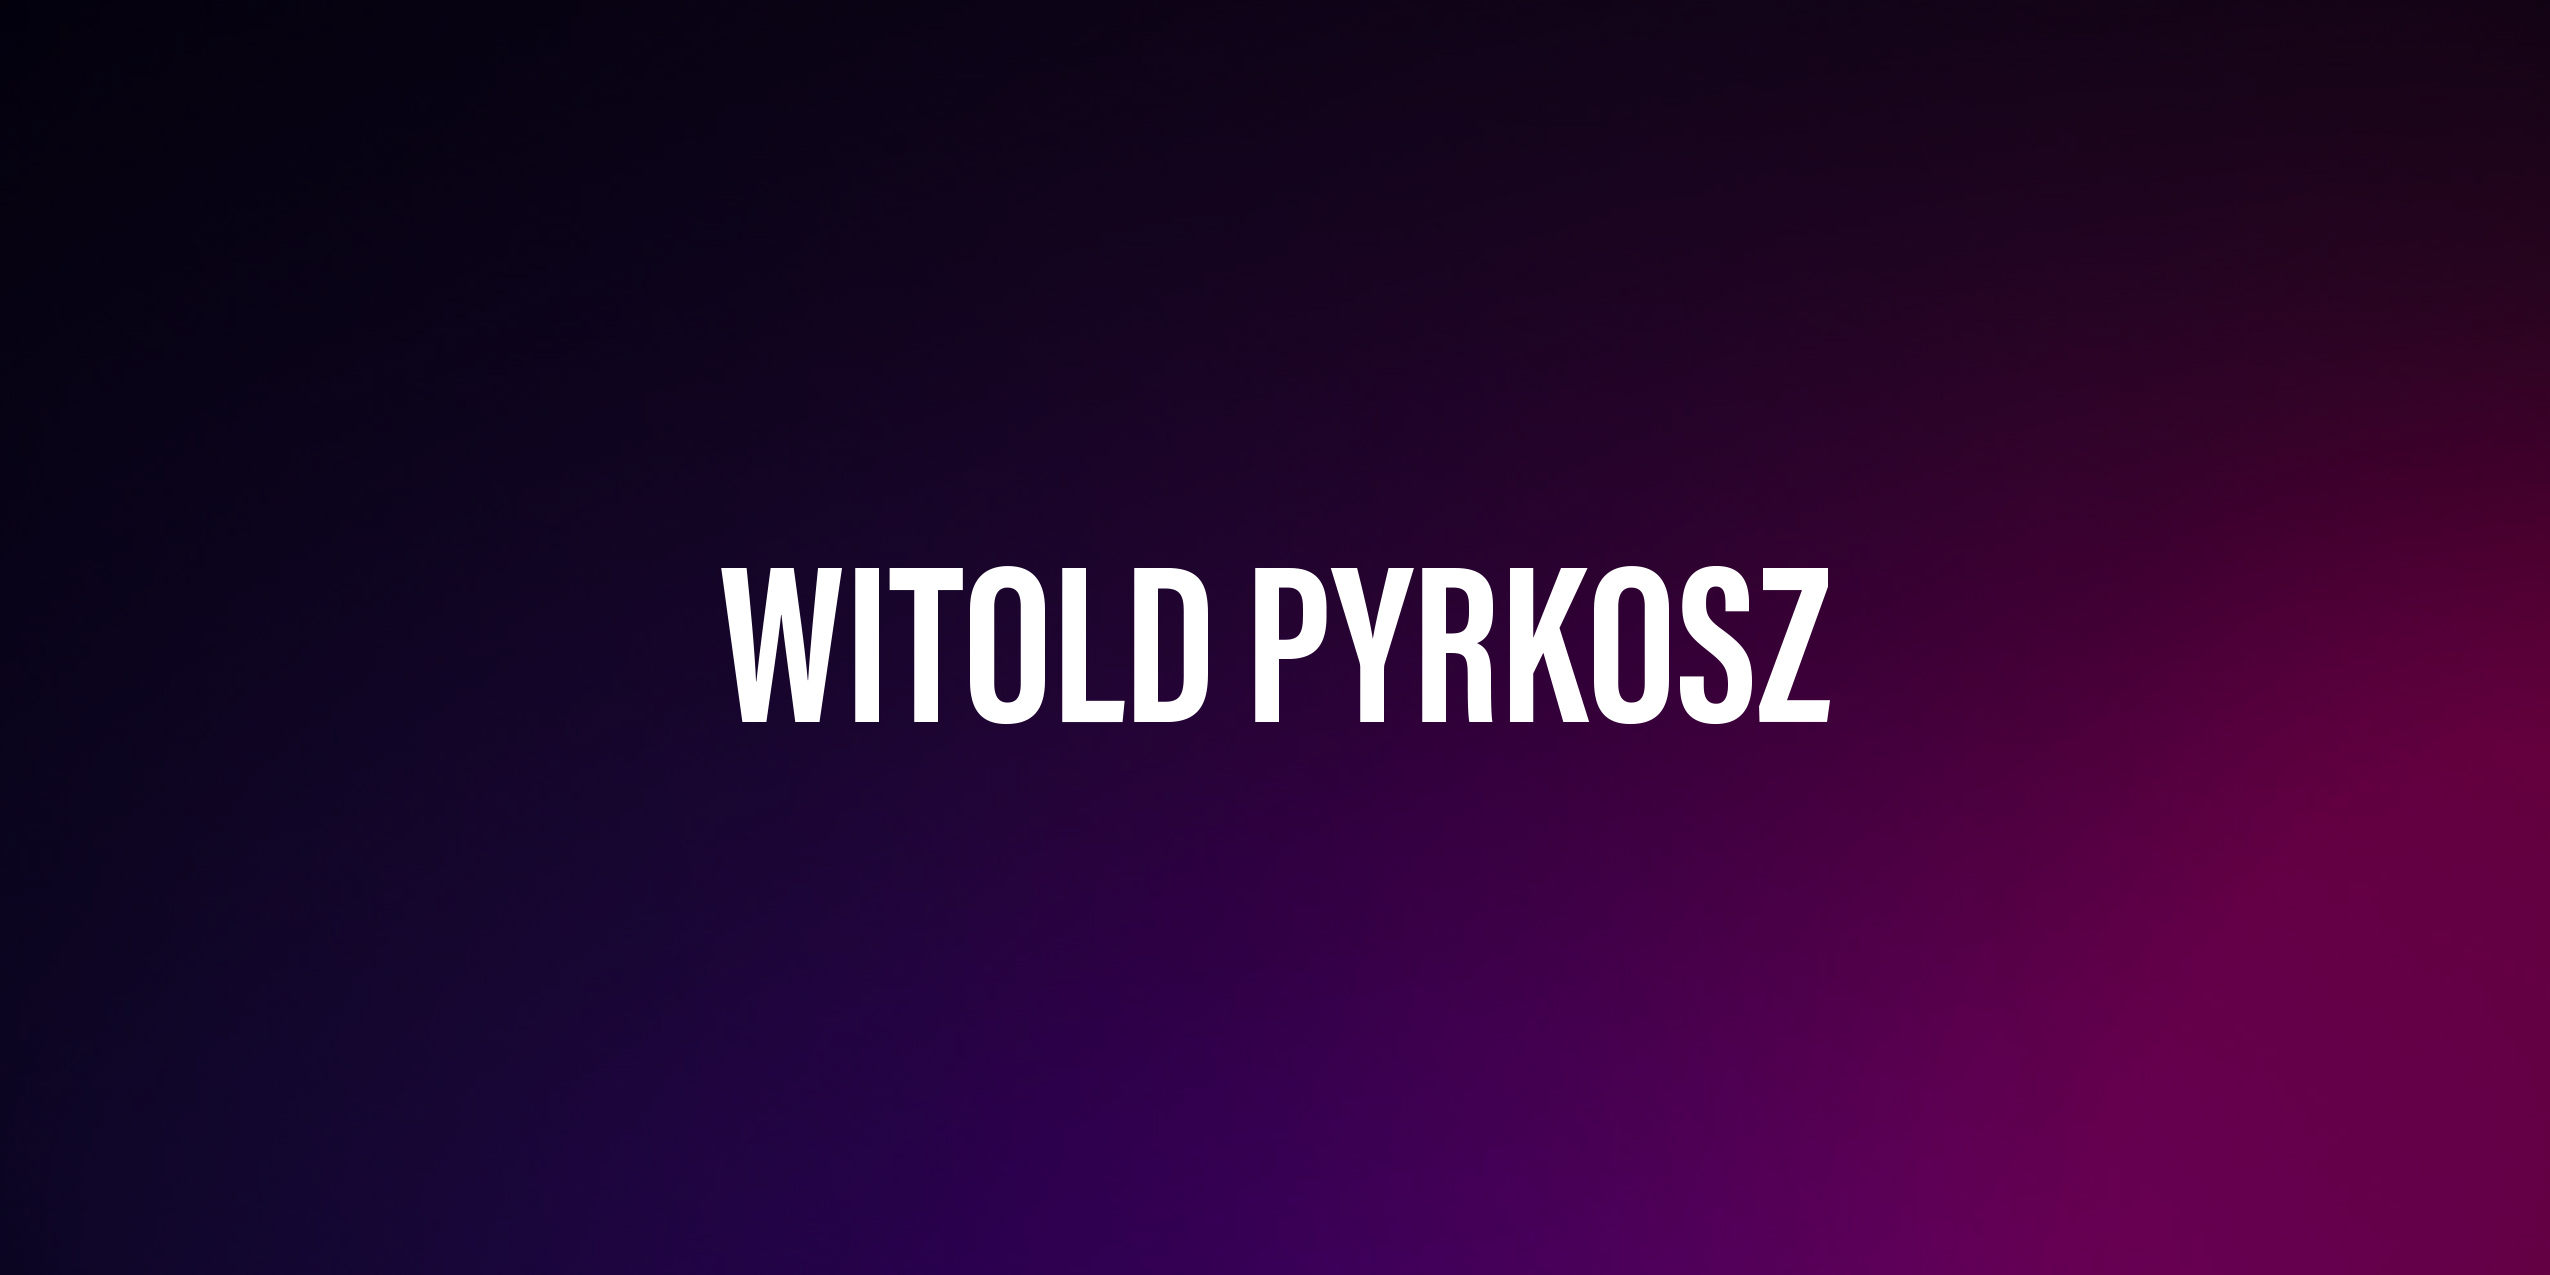 Witold Pyrkosz – życiorys i filmografia